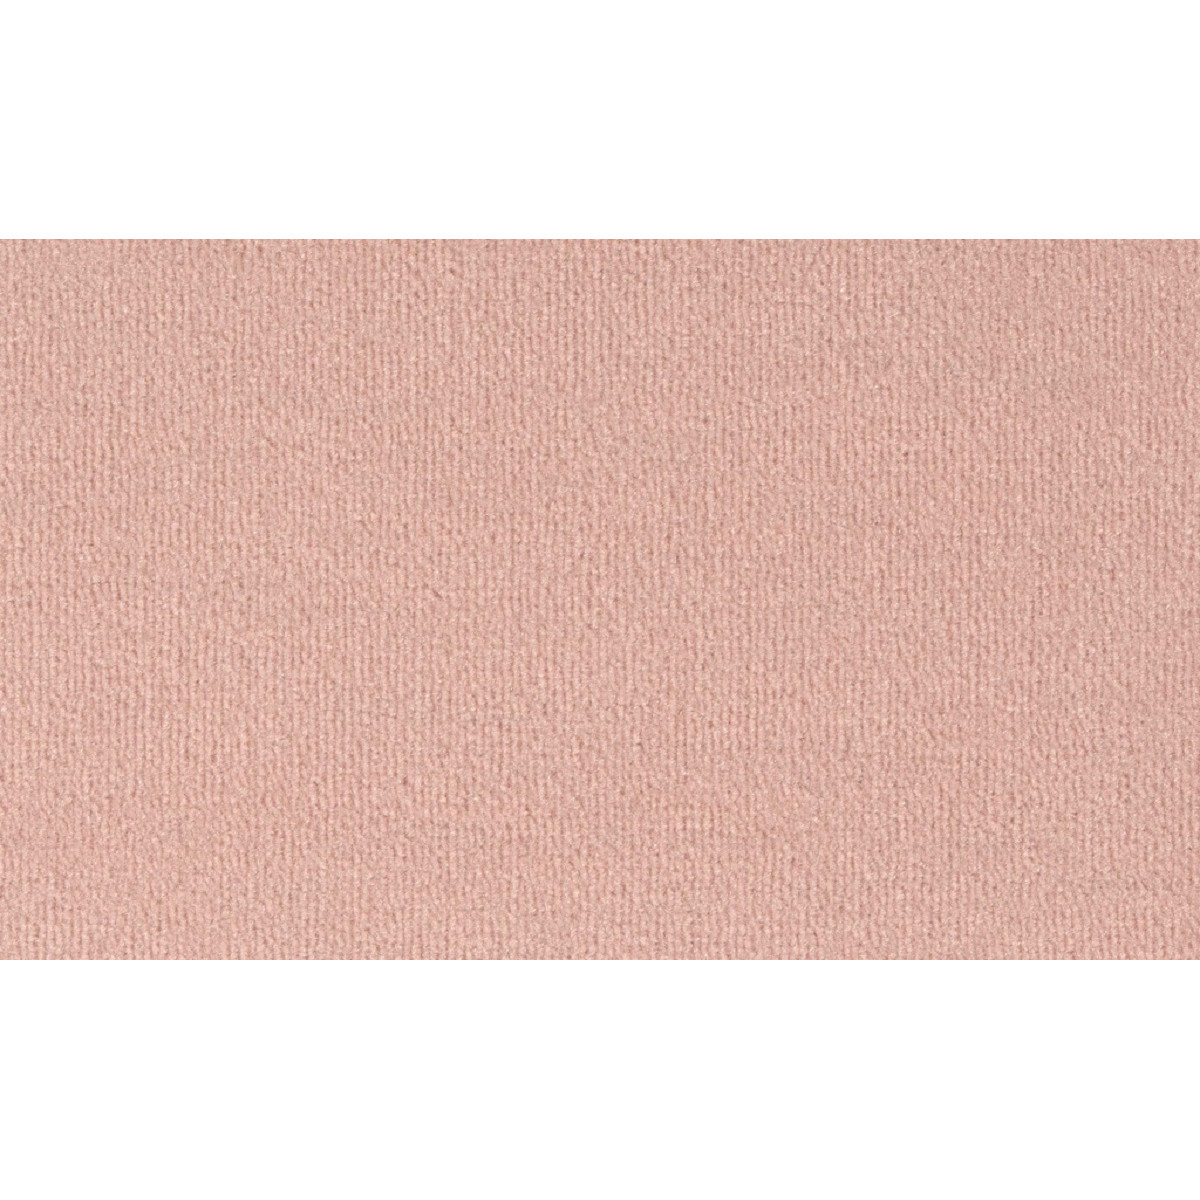 Metrážny koberec Bingo 1P14 ružový